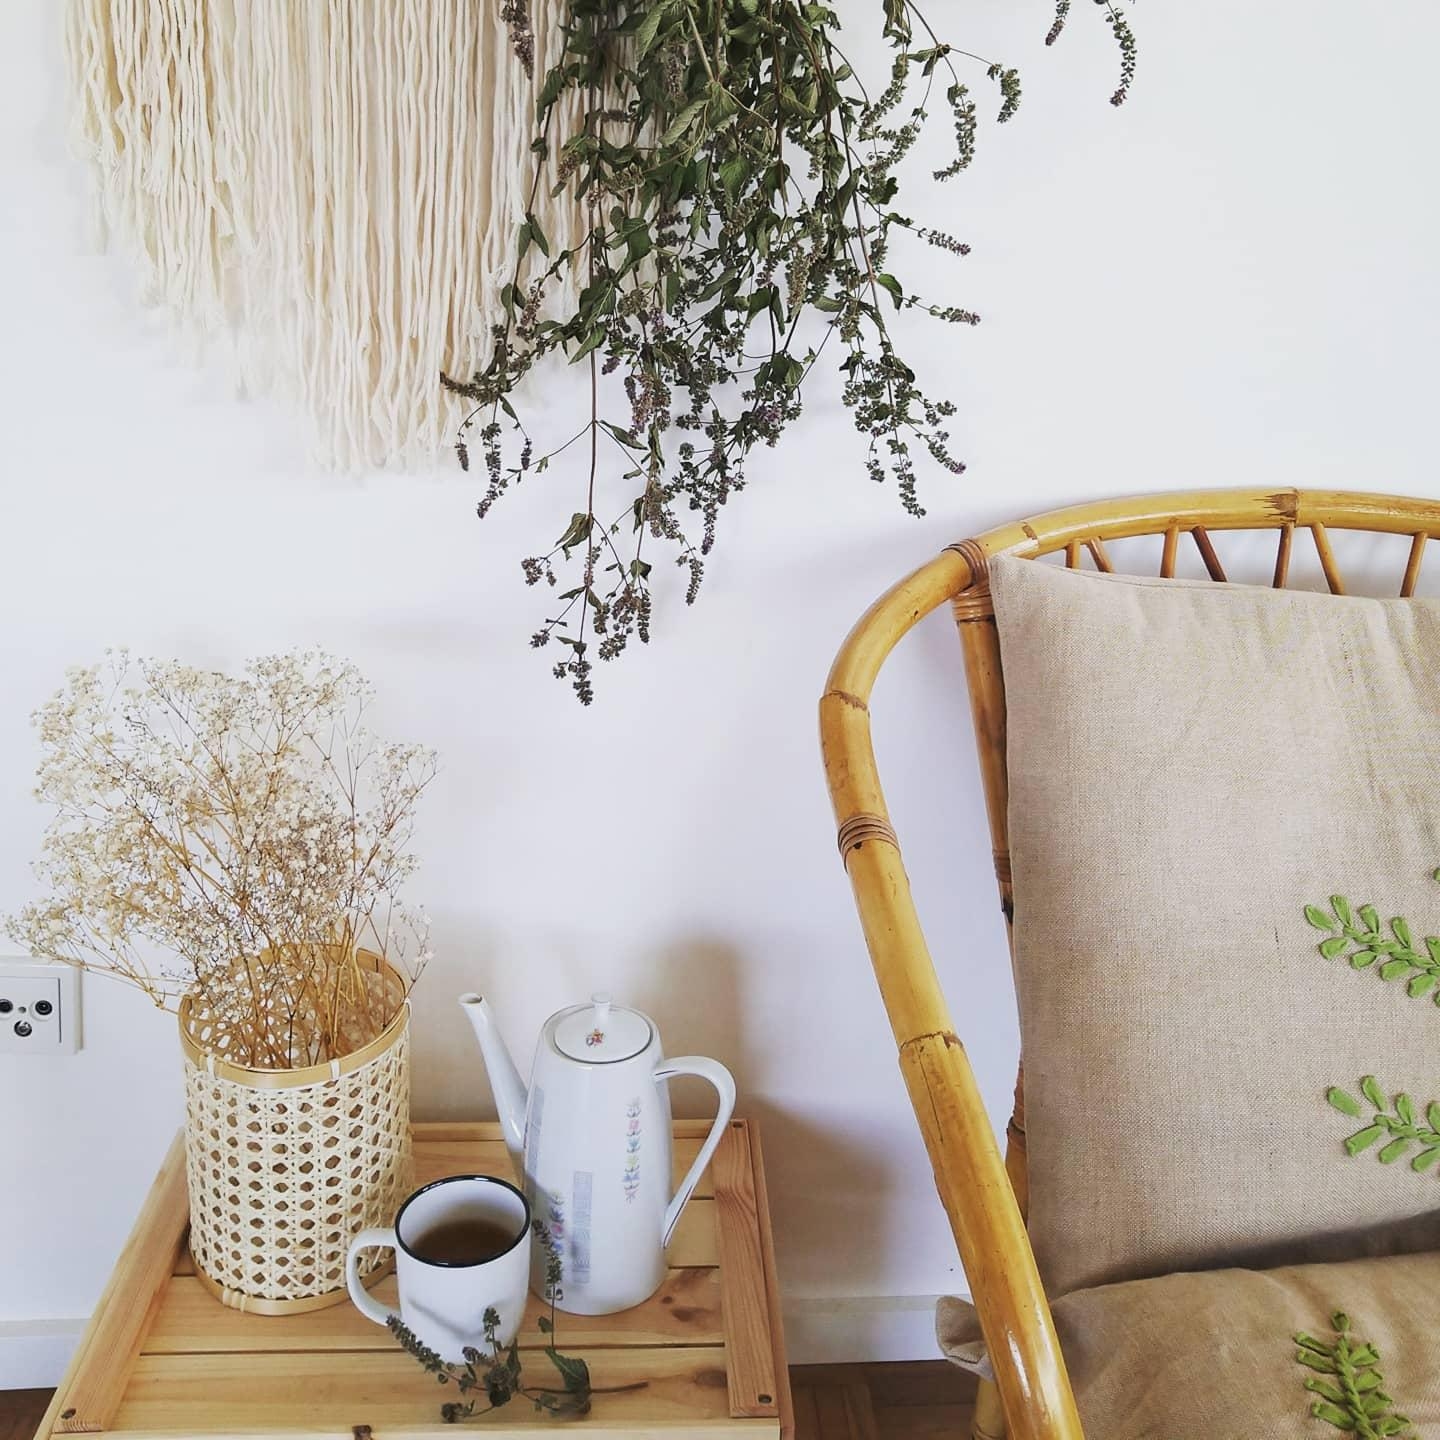 #cozyhome #cozy #Pfefferminze  #bohohome #vintage #vintagestyle 
gemütlich 🌿♡ 
#www.instagram.com/froilein_gotzlowski 